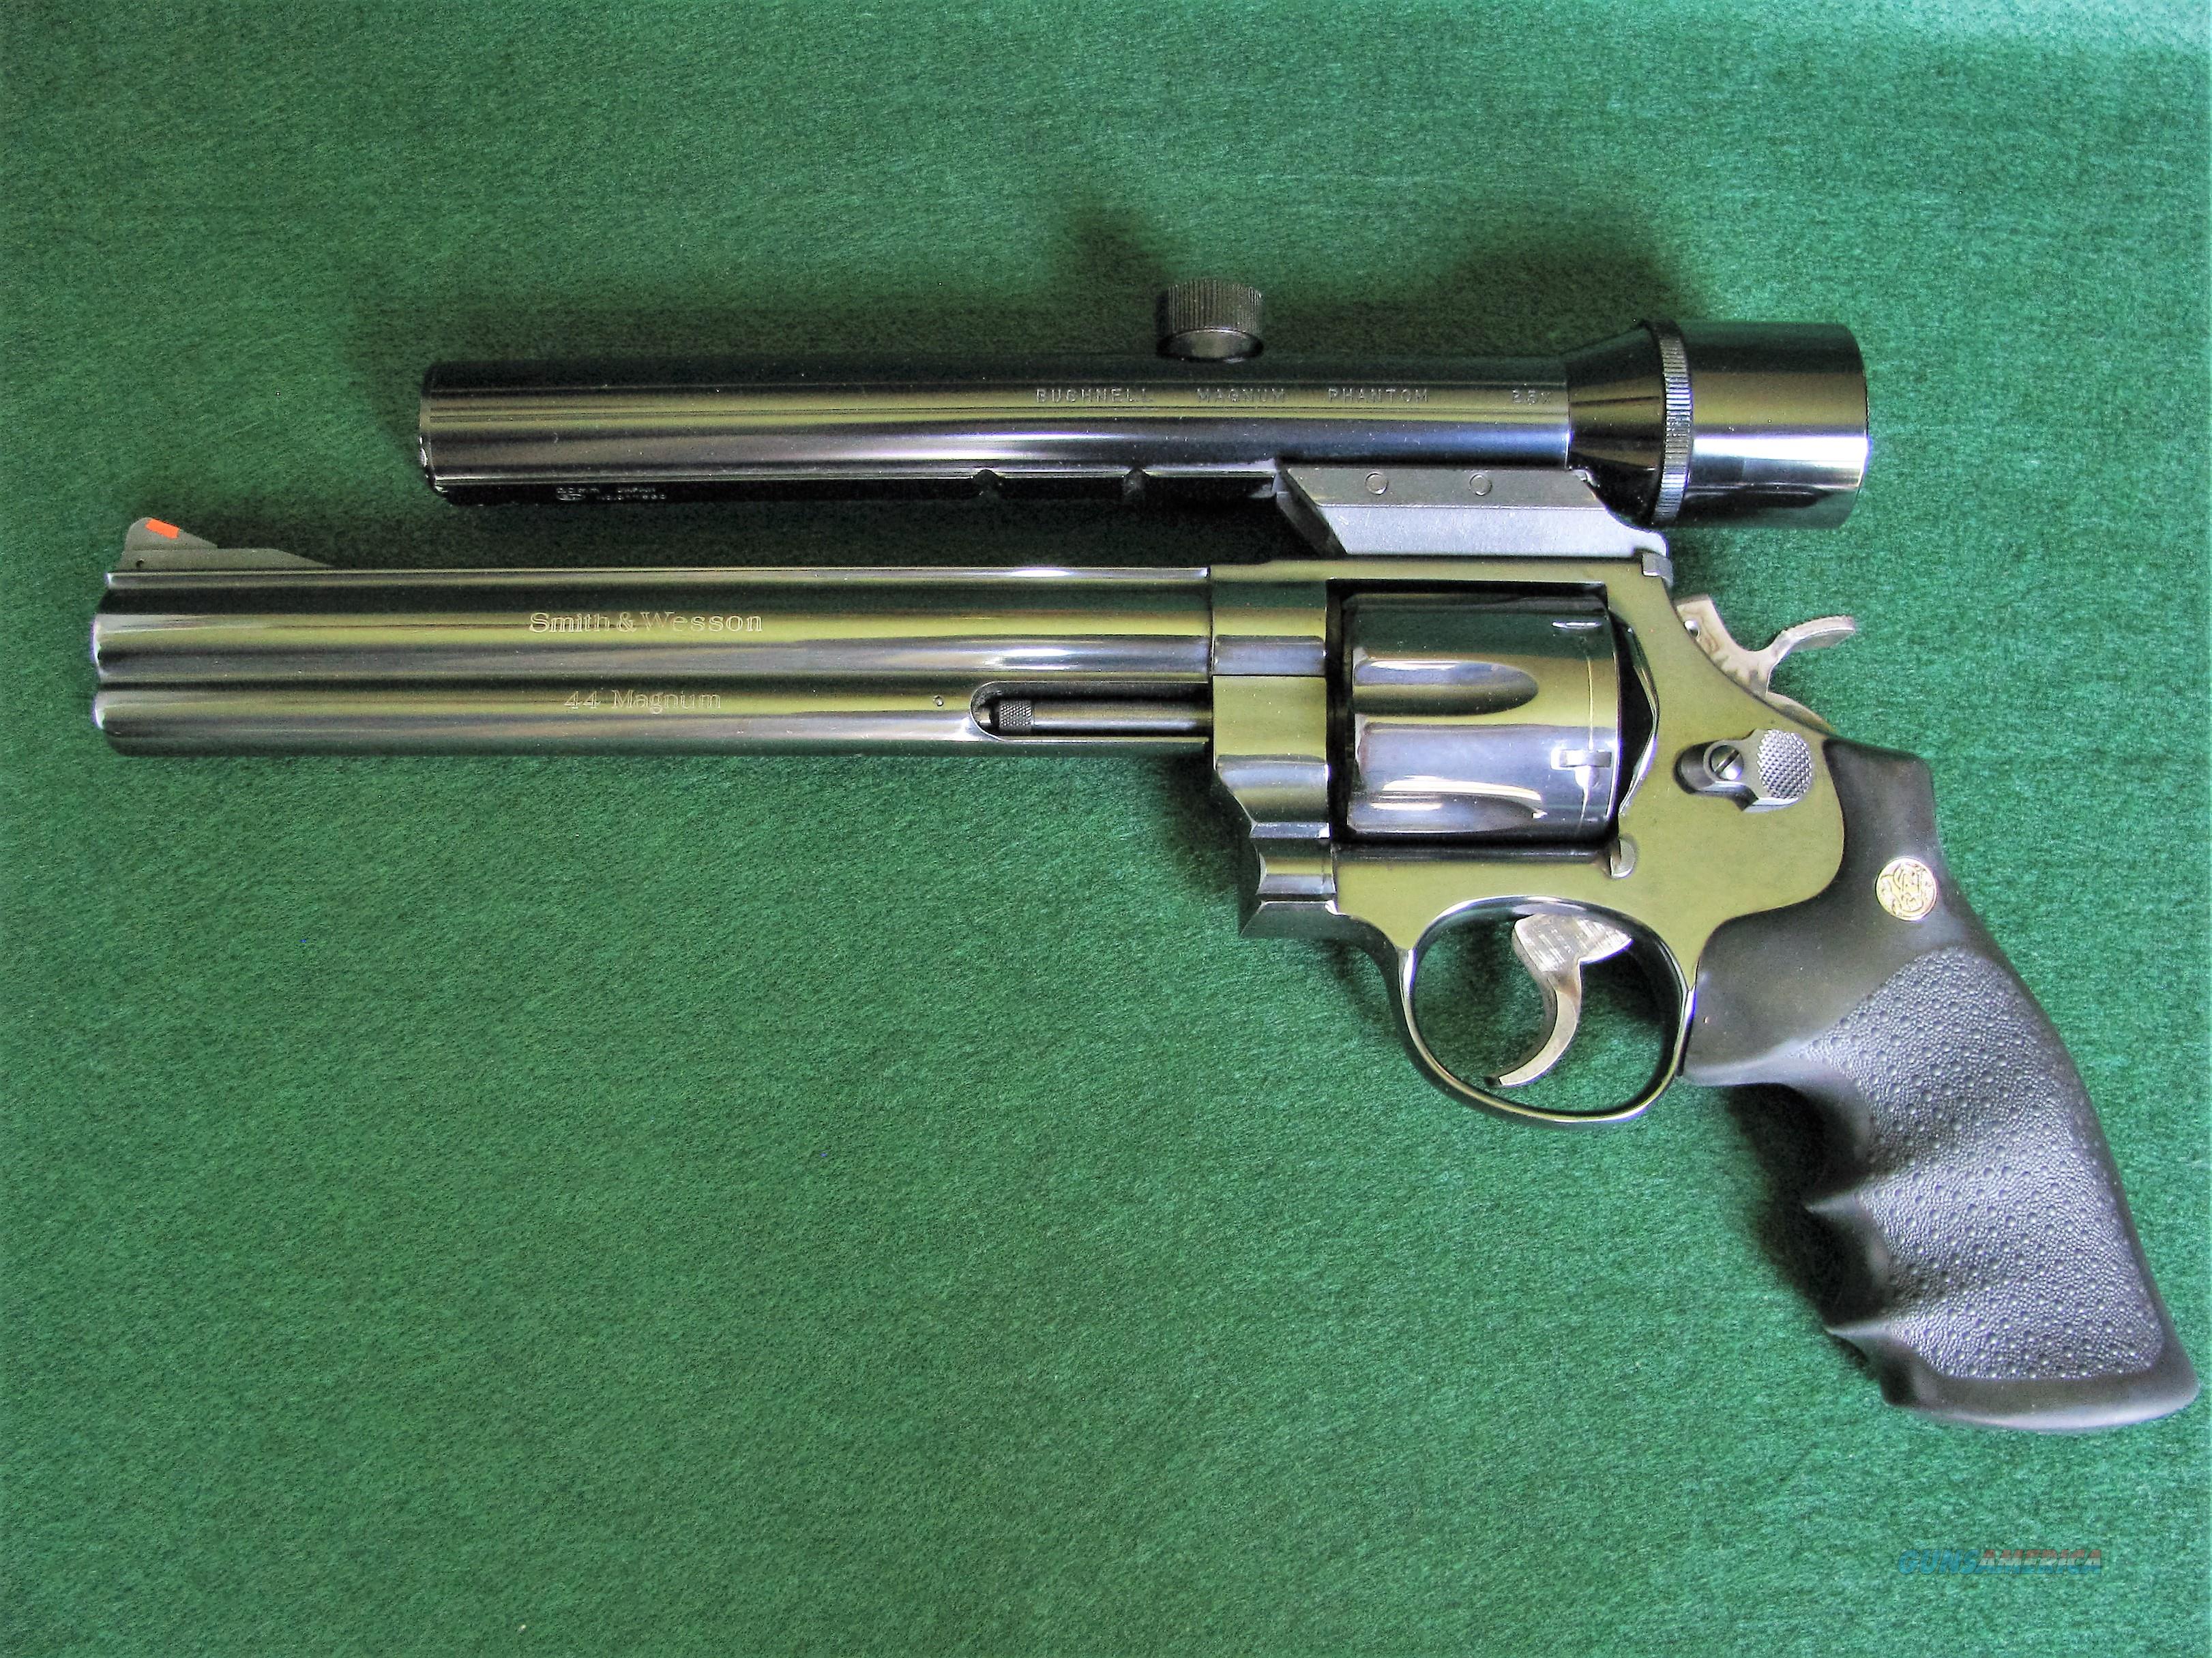 Smith & Wesson Model 29 Classic 44... for sale at Gunsamerica.com ...